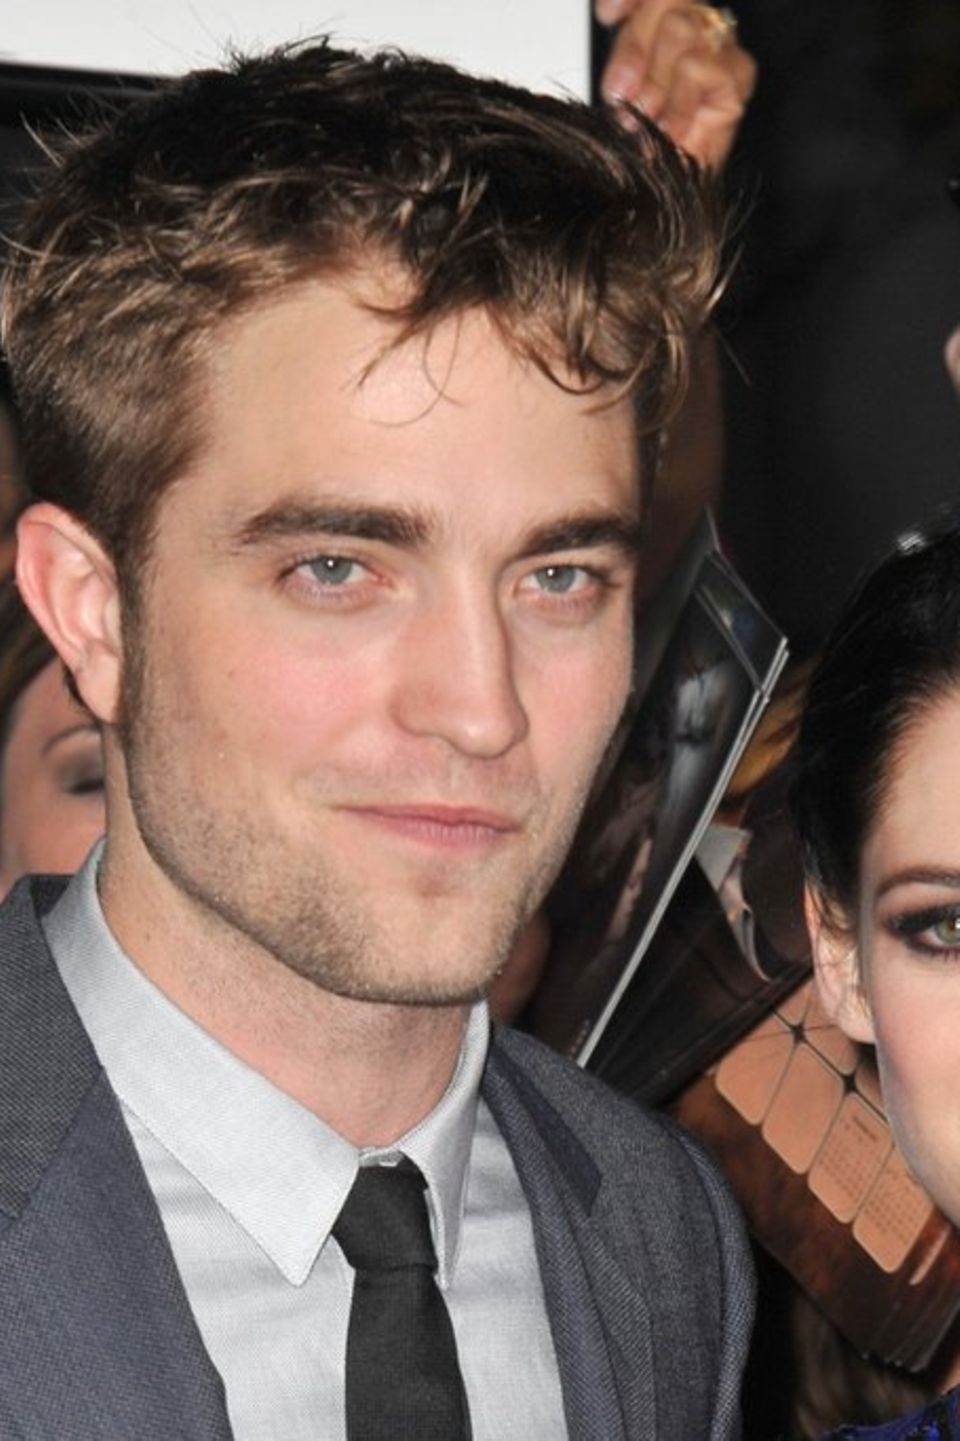 Robert Pattinson und Kristen Stewart arbeiteten in den Kult-Filmen "Twilight" miteinander. Aus der Zusammenarbeit entwickelte